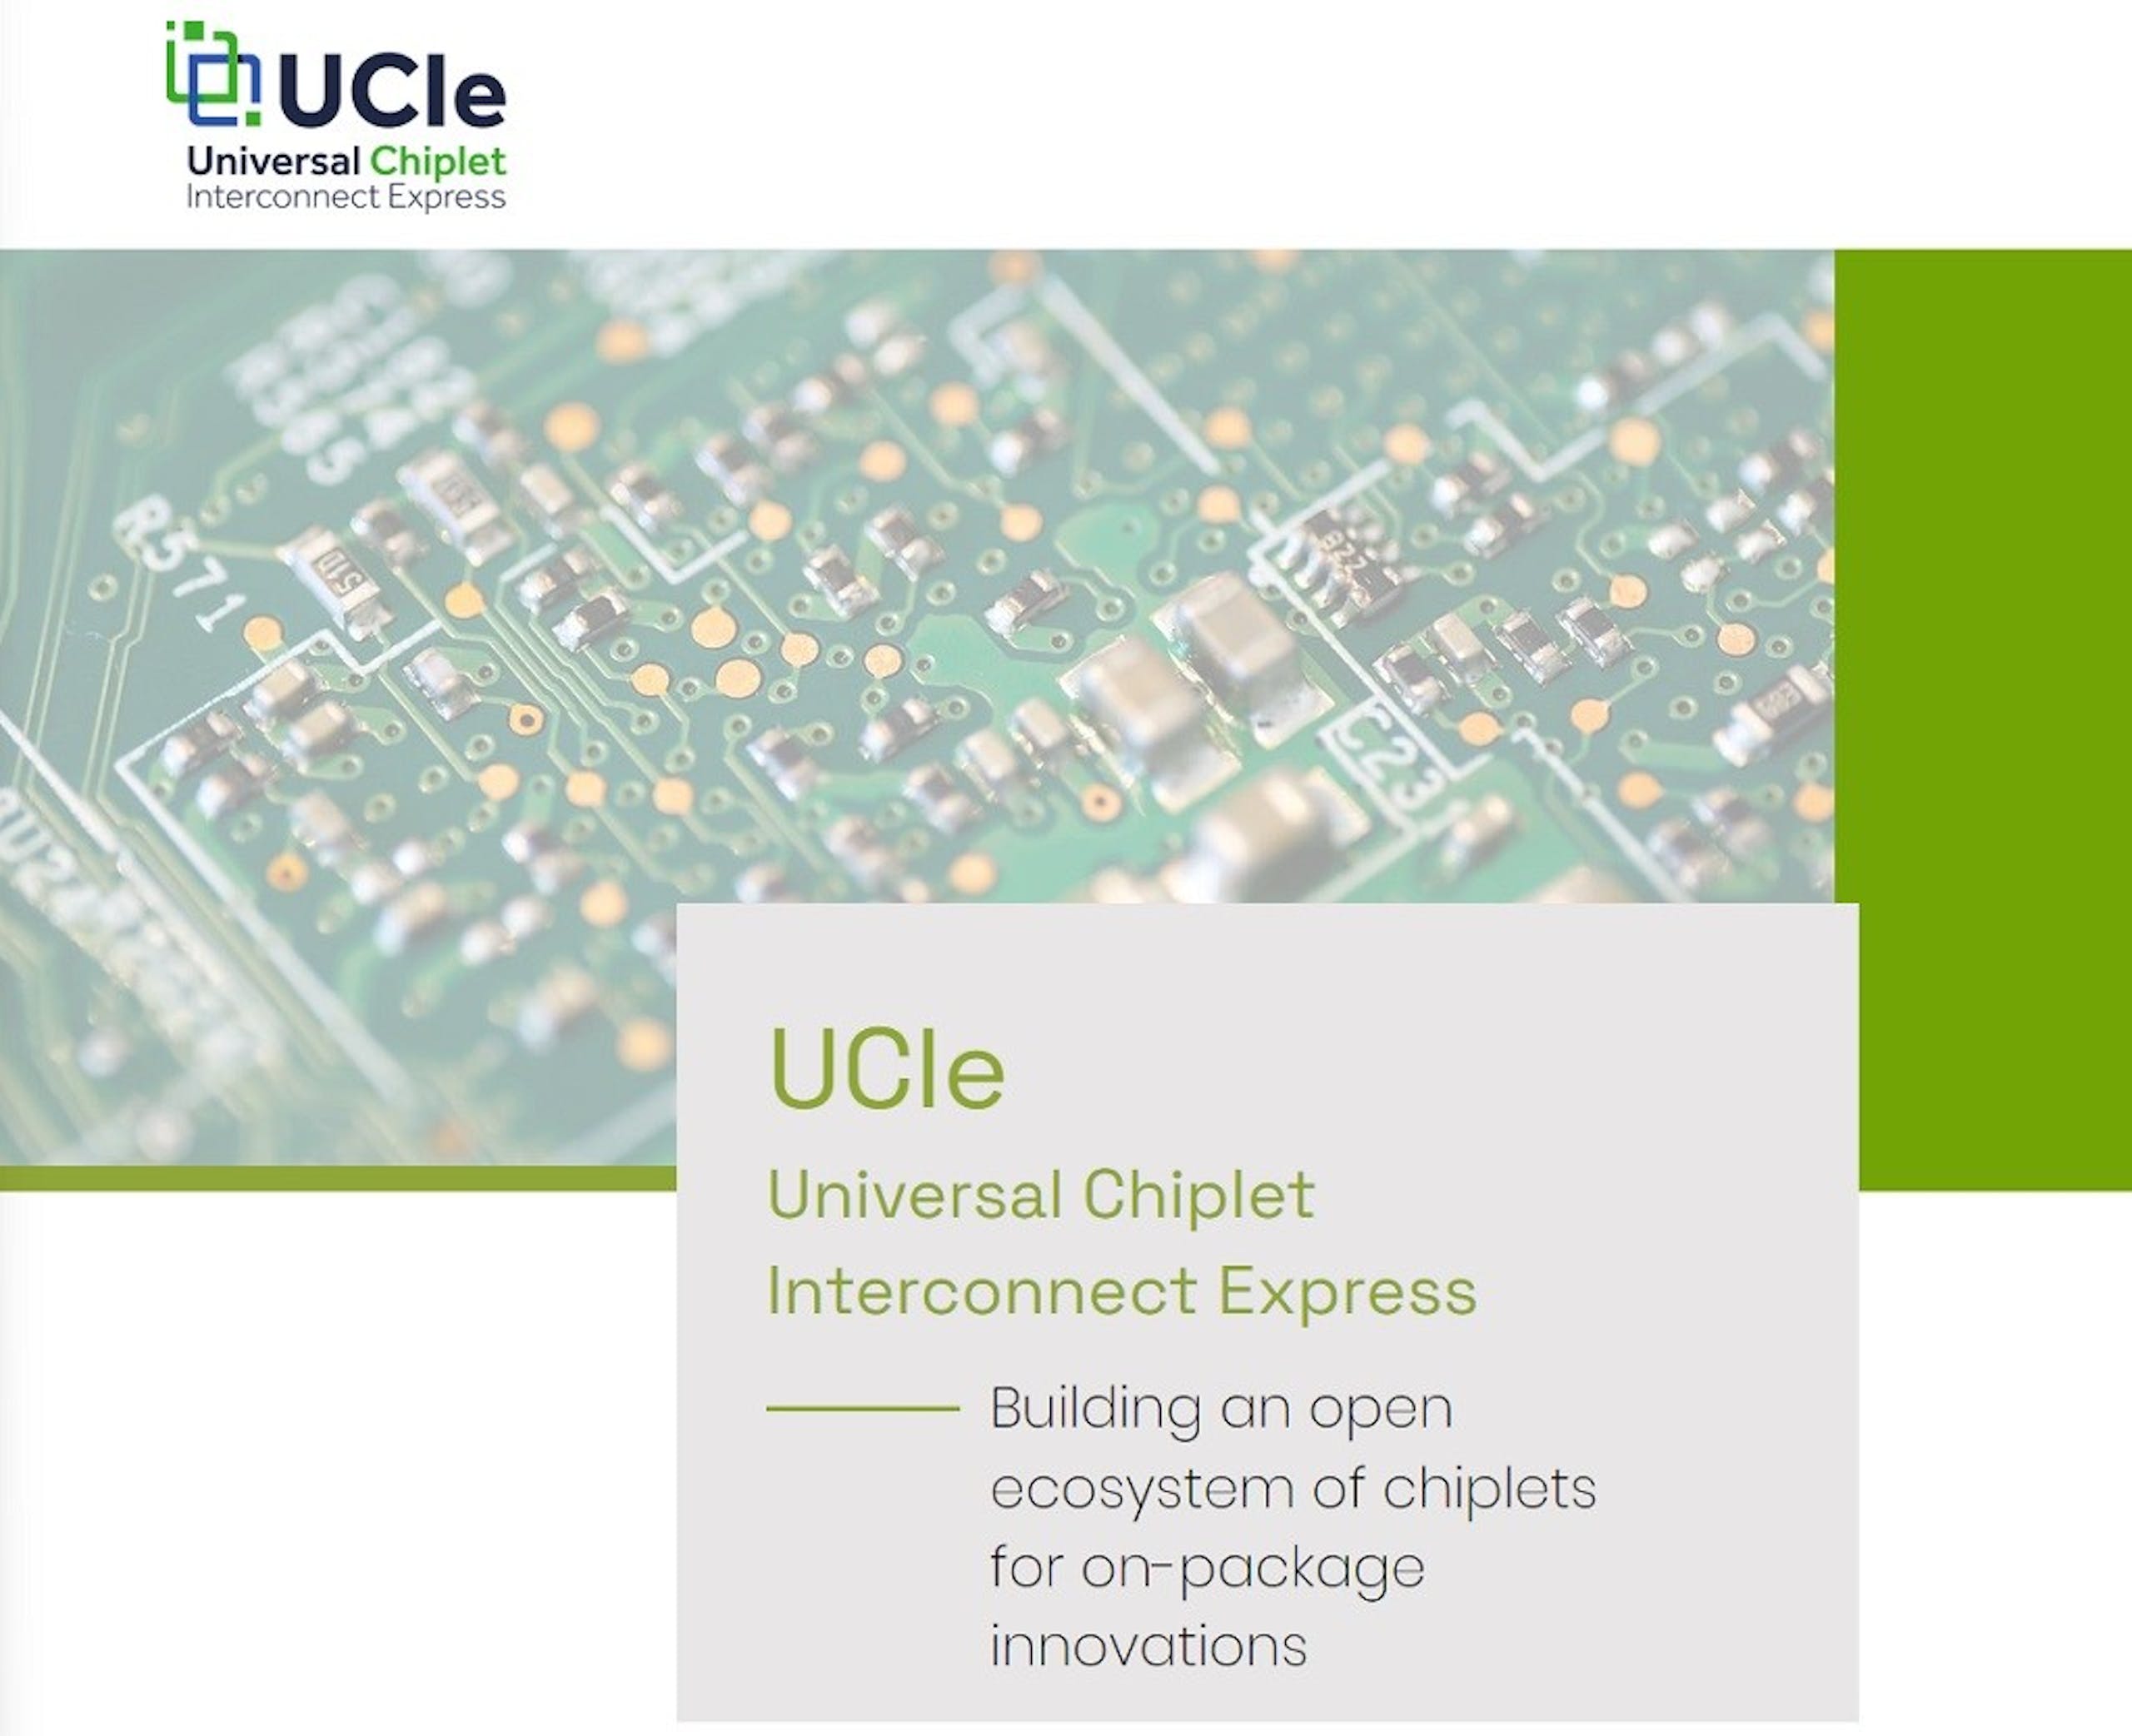 照片中提到了QUCle、Universal Chiplet、Interconnect Express，跟國際自行車聯盟有關，包含了量子計算機高清圖像下載、電腦、量子計算、圖片、電腦運算